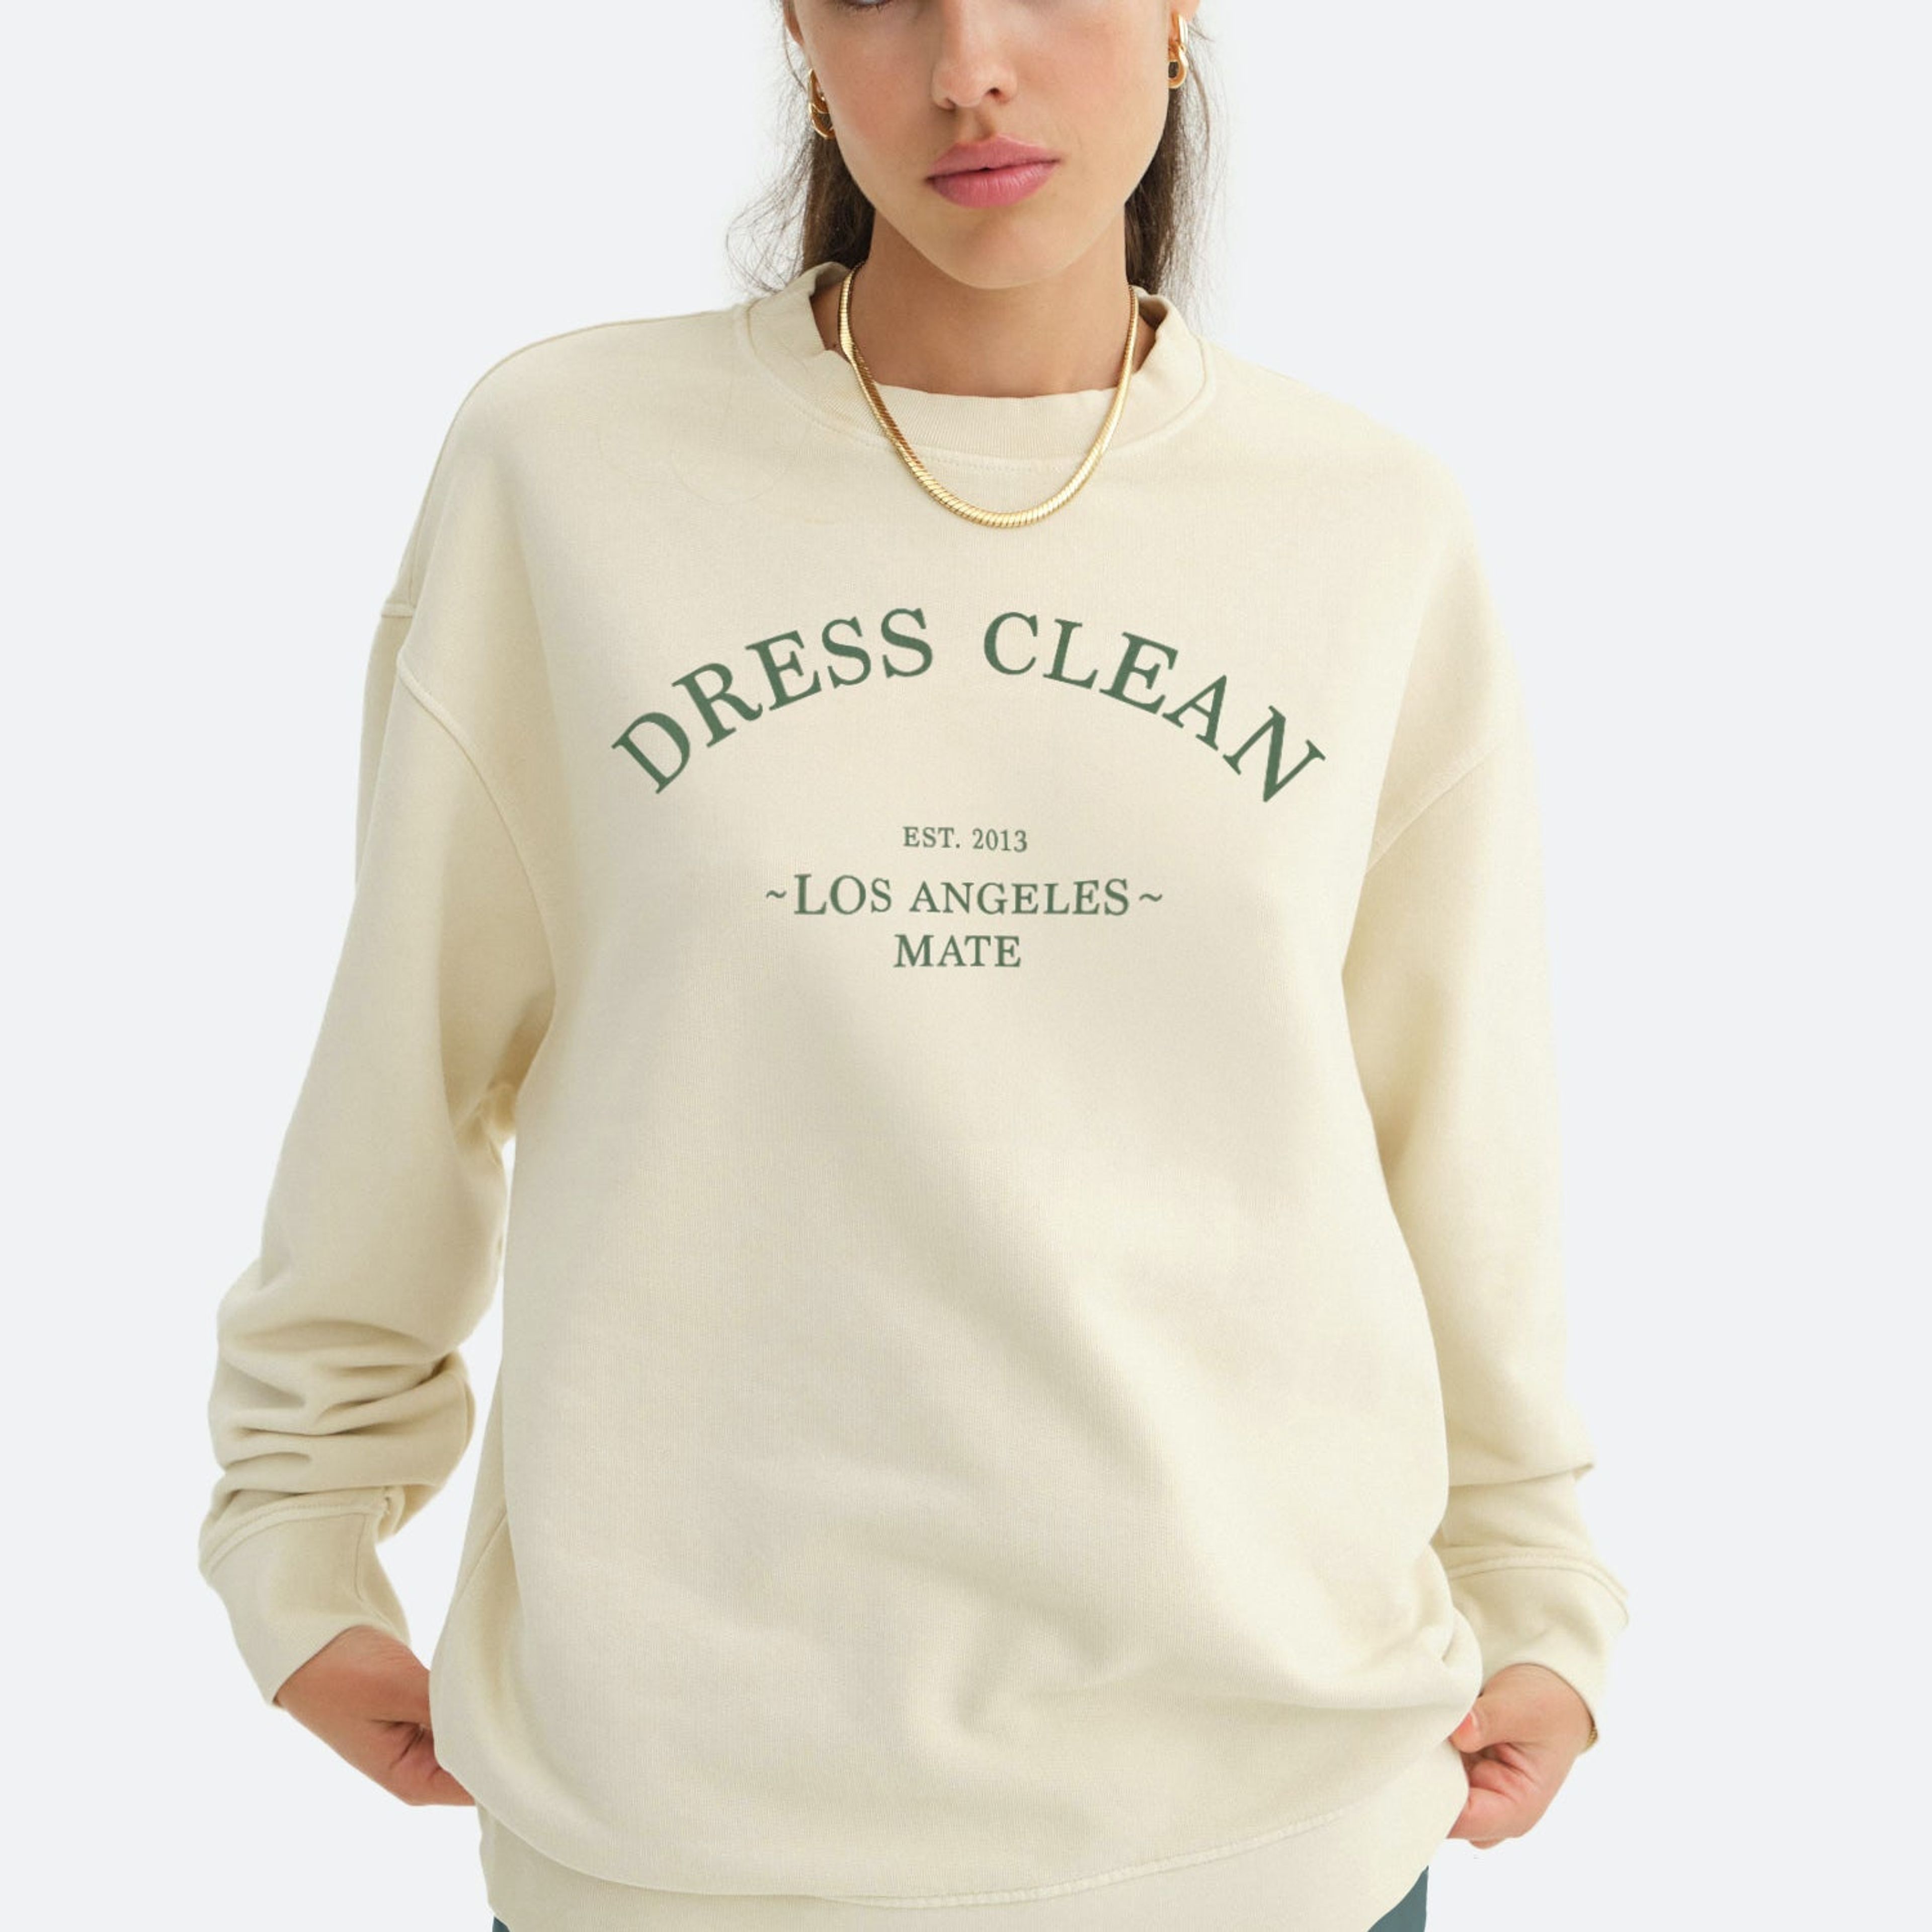 Organic Fleece Graphic Oversized Sweatshirt